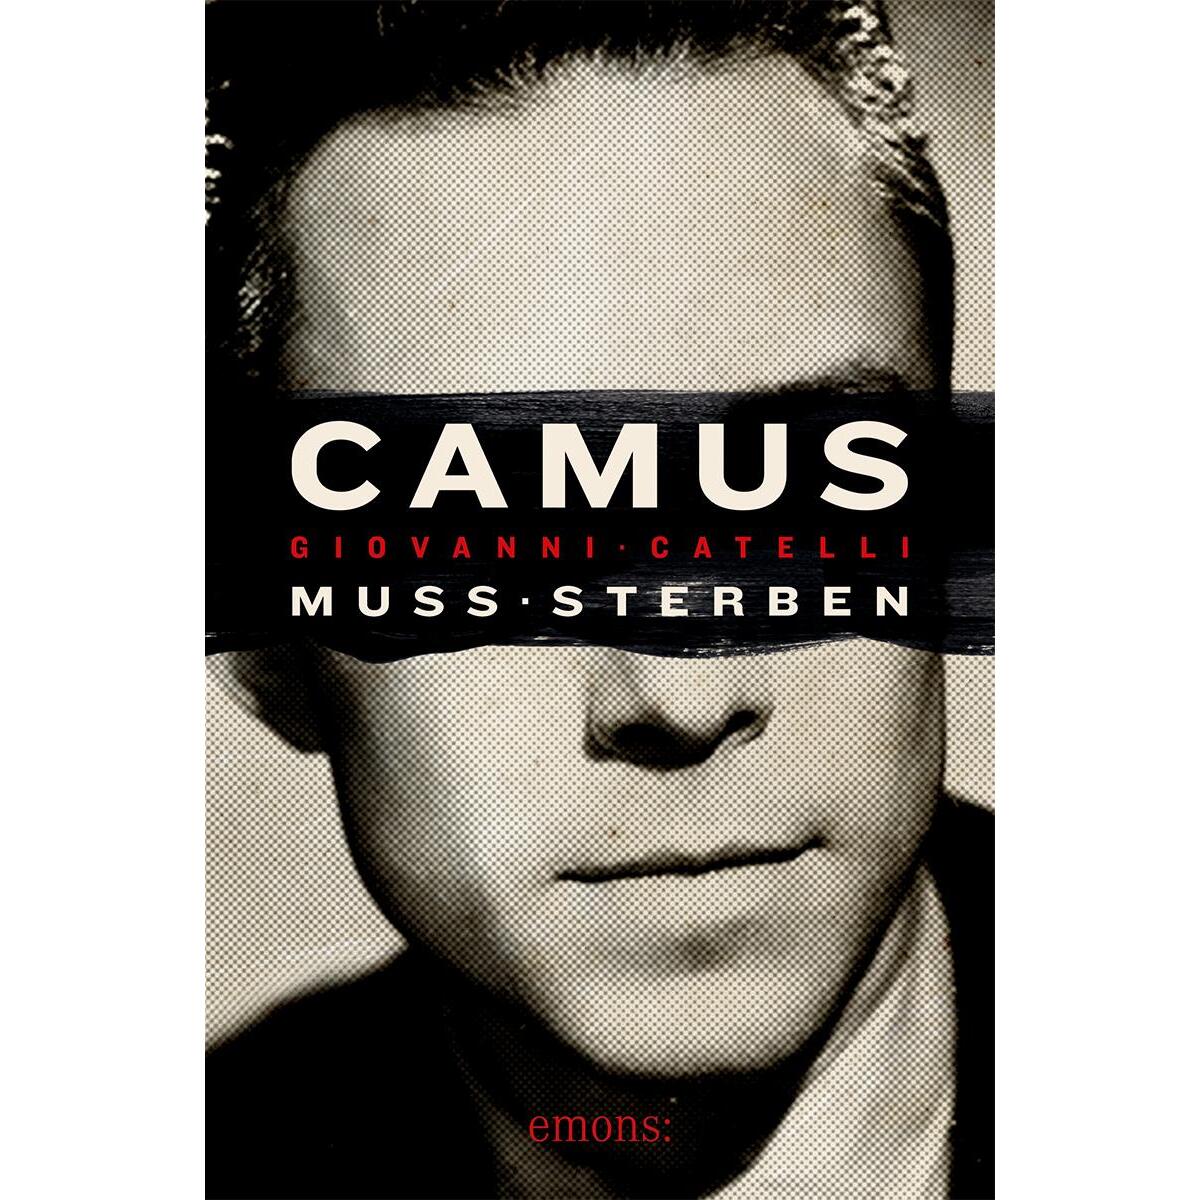 Camus muss sterben von Emons Verlag